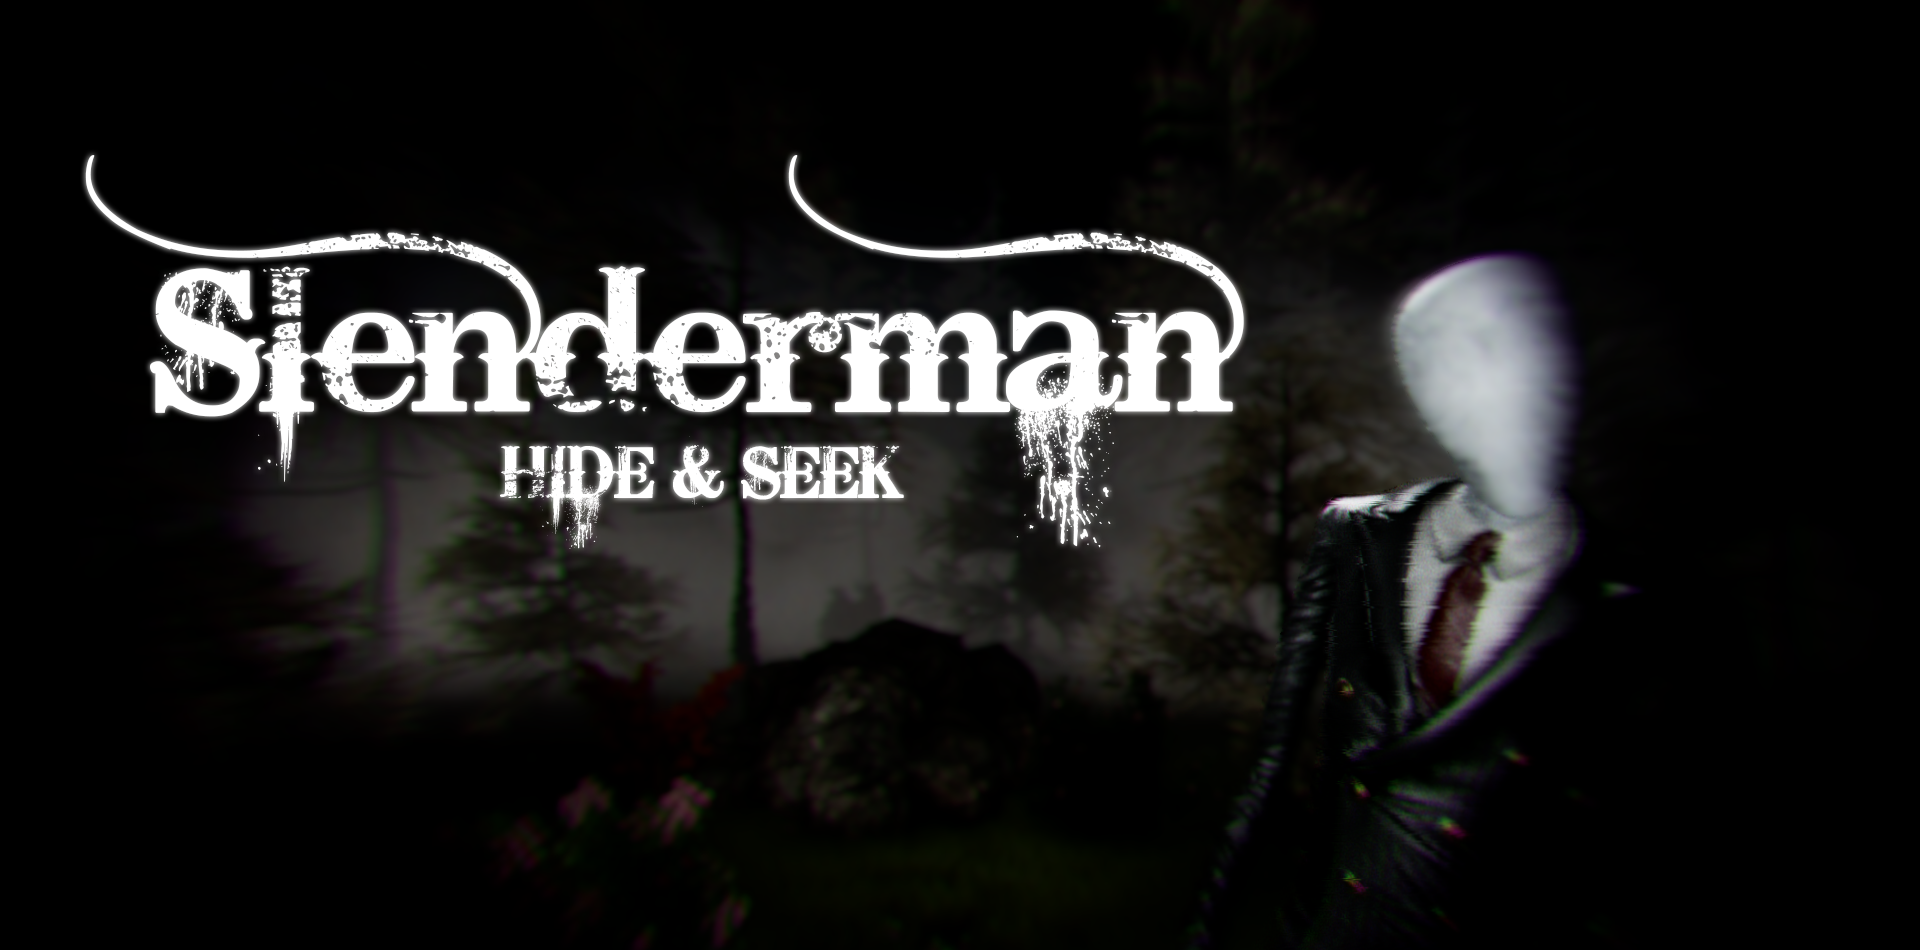 Download Slenderman Hide & Seek Online android on PC